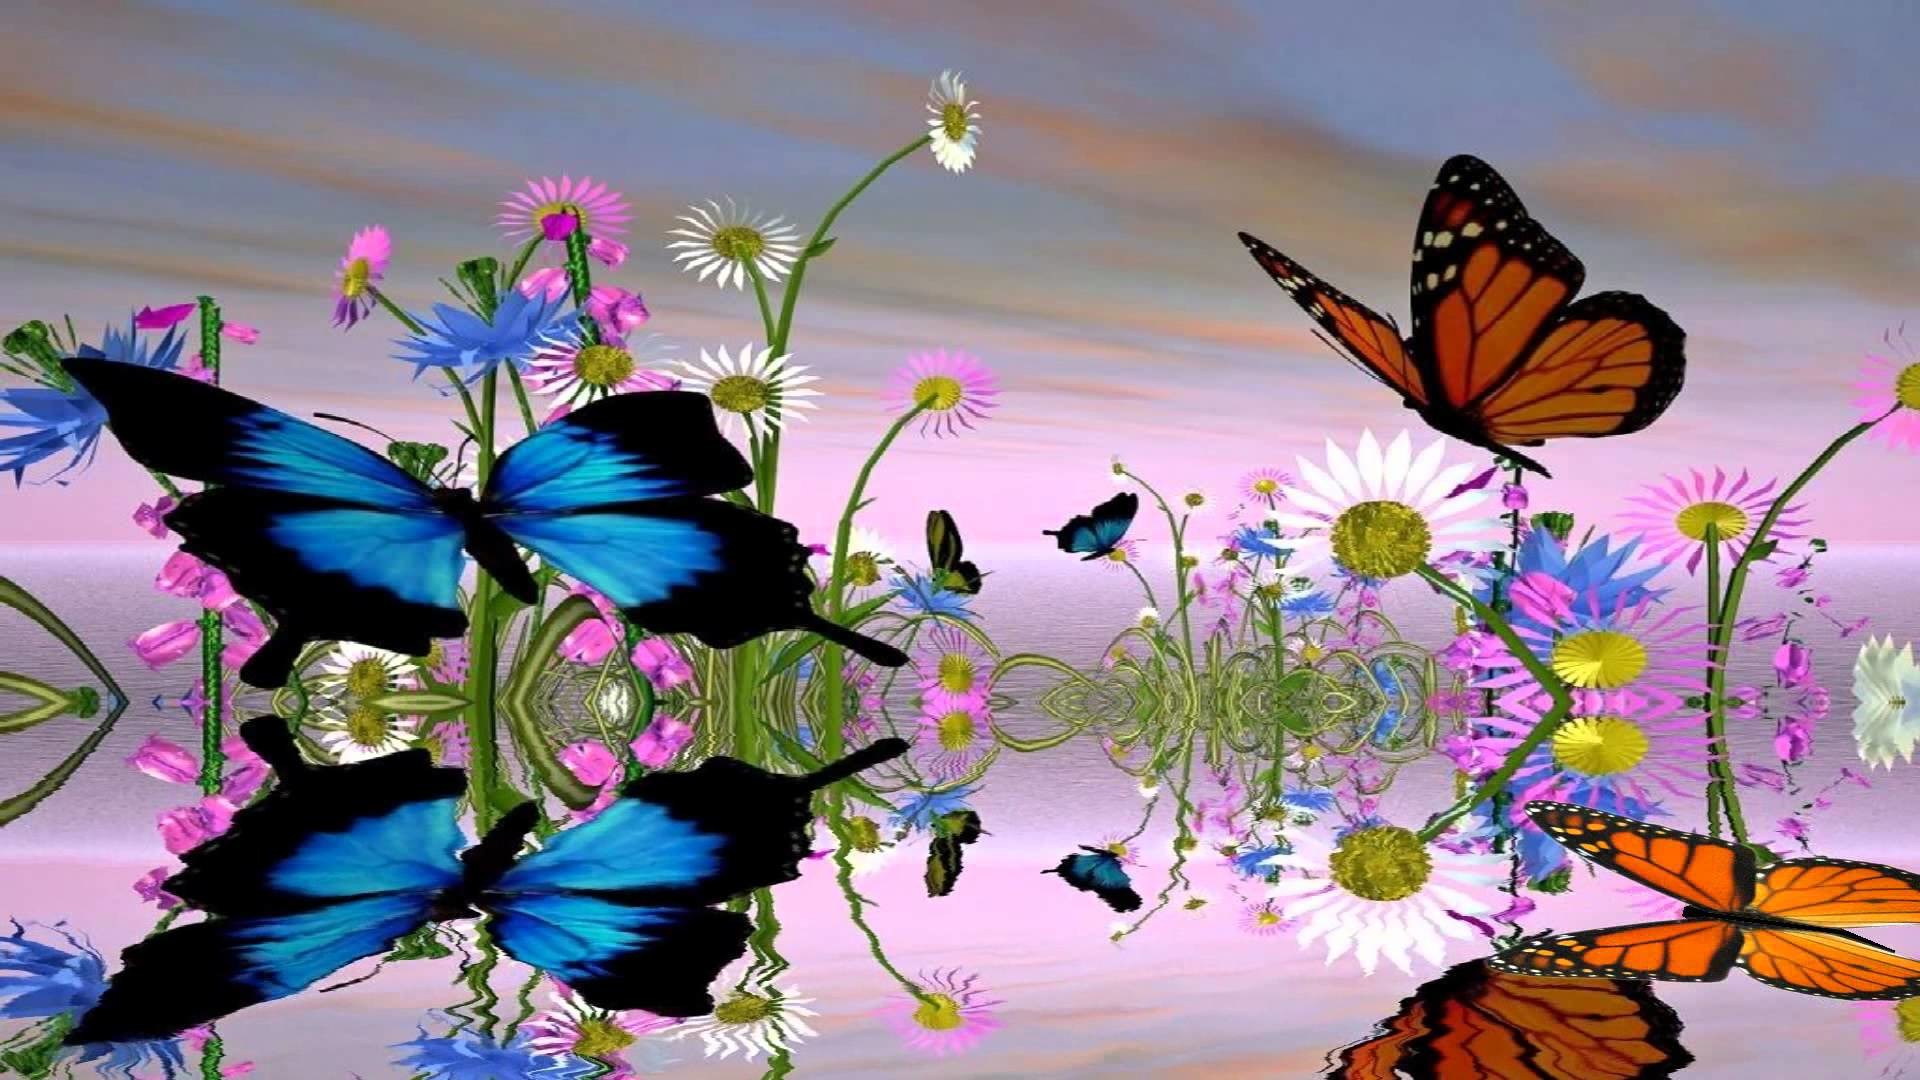 Бесплатные обои на телефон живые которые двигаются. Бабочка на цветке. Фон бабочки. Красивый фон с бабочками. Сверкающие бабочки.